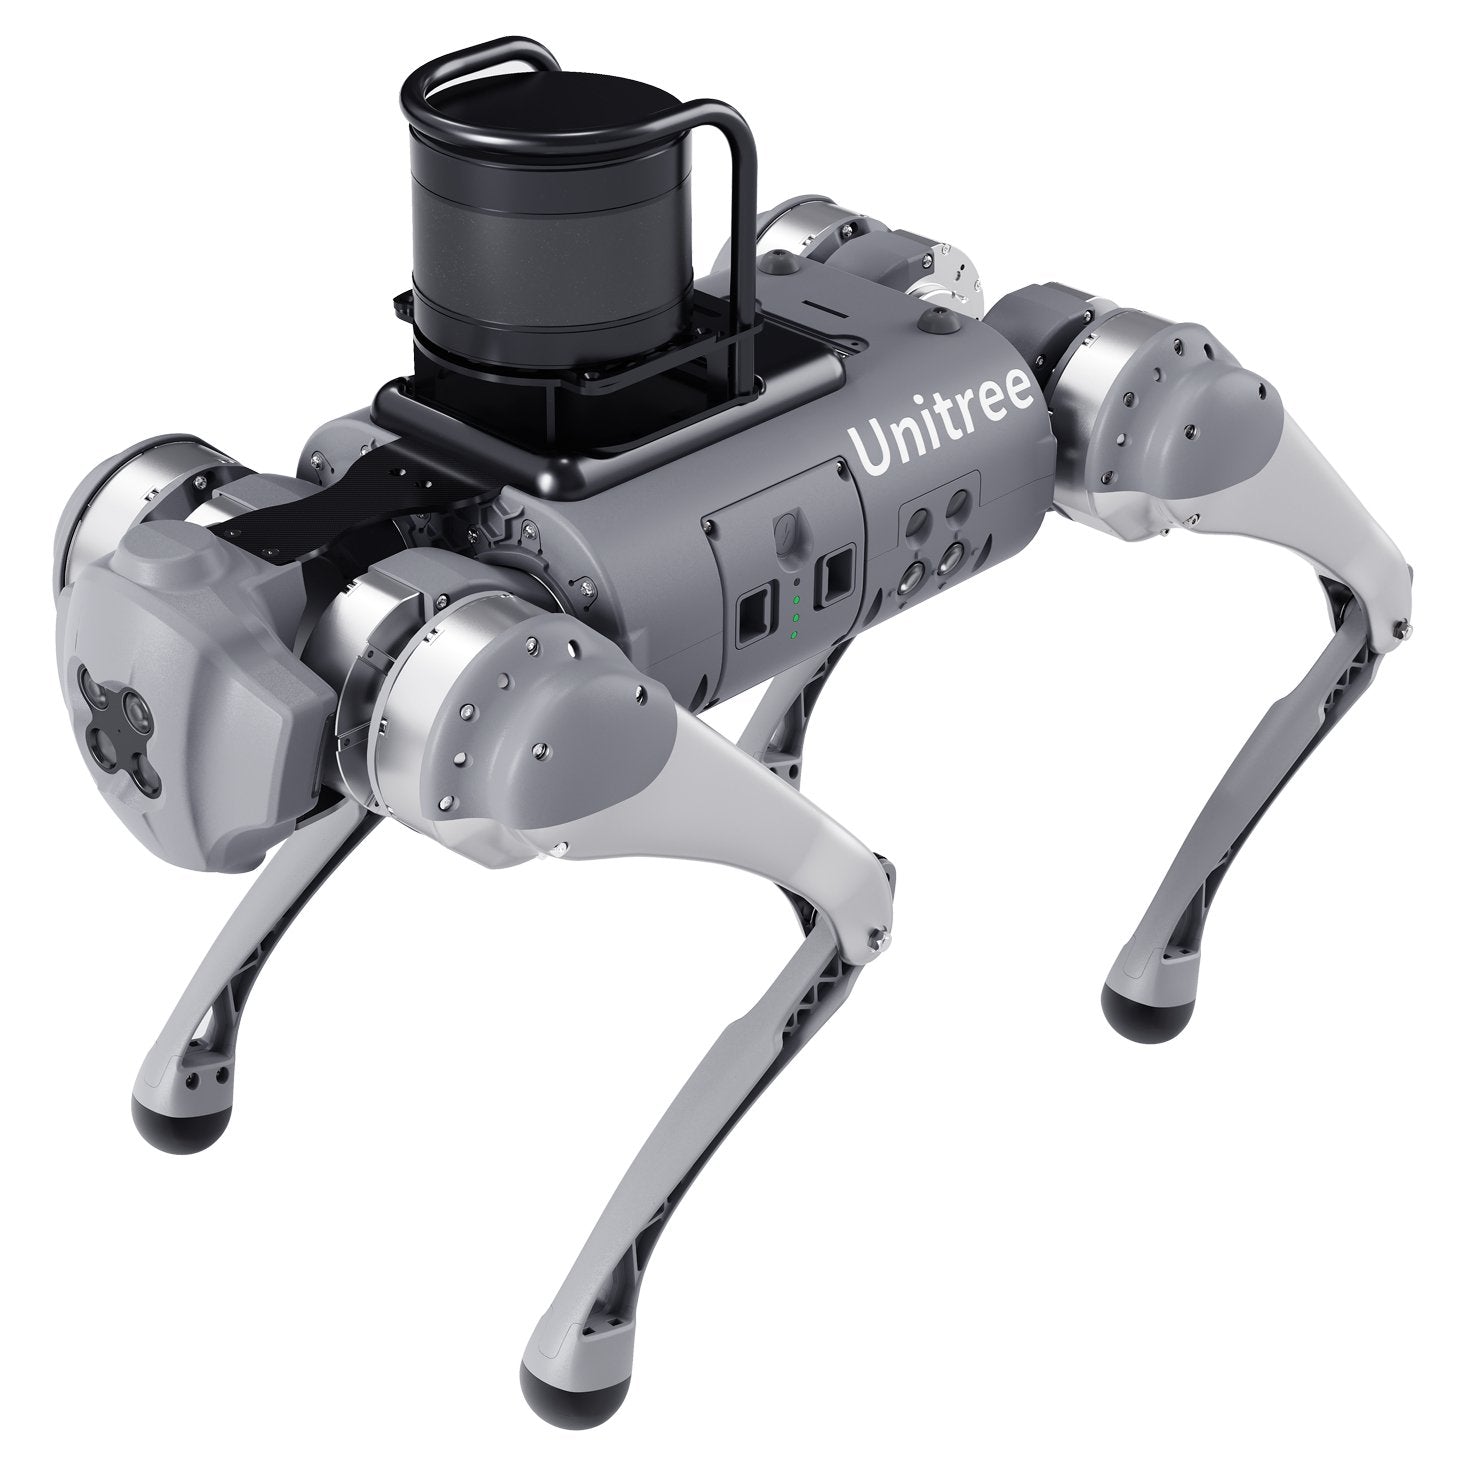 Unitree Go1 EDU Plus (with Robosense 3D Lidar) Quadruped Robot Dog - RoboStore